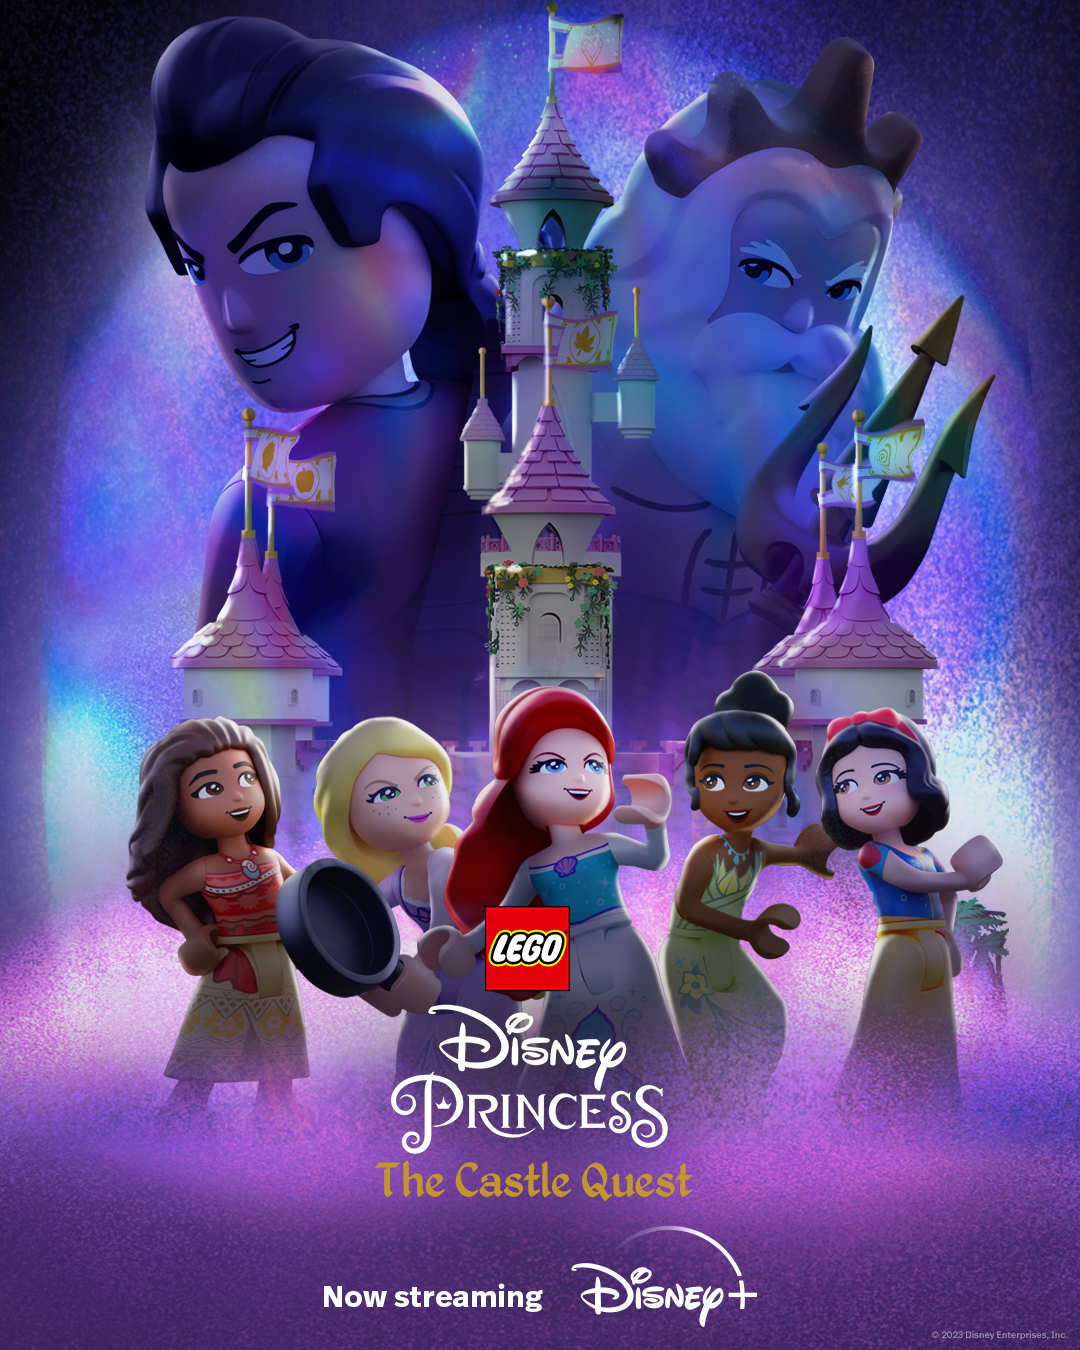 LEGO Disney Princess The Castle Quest เต็มเรื่อง